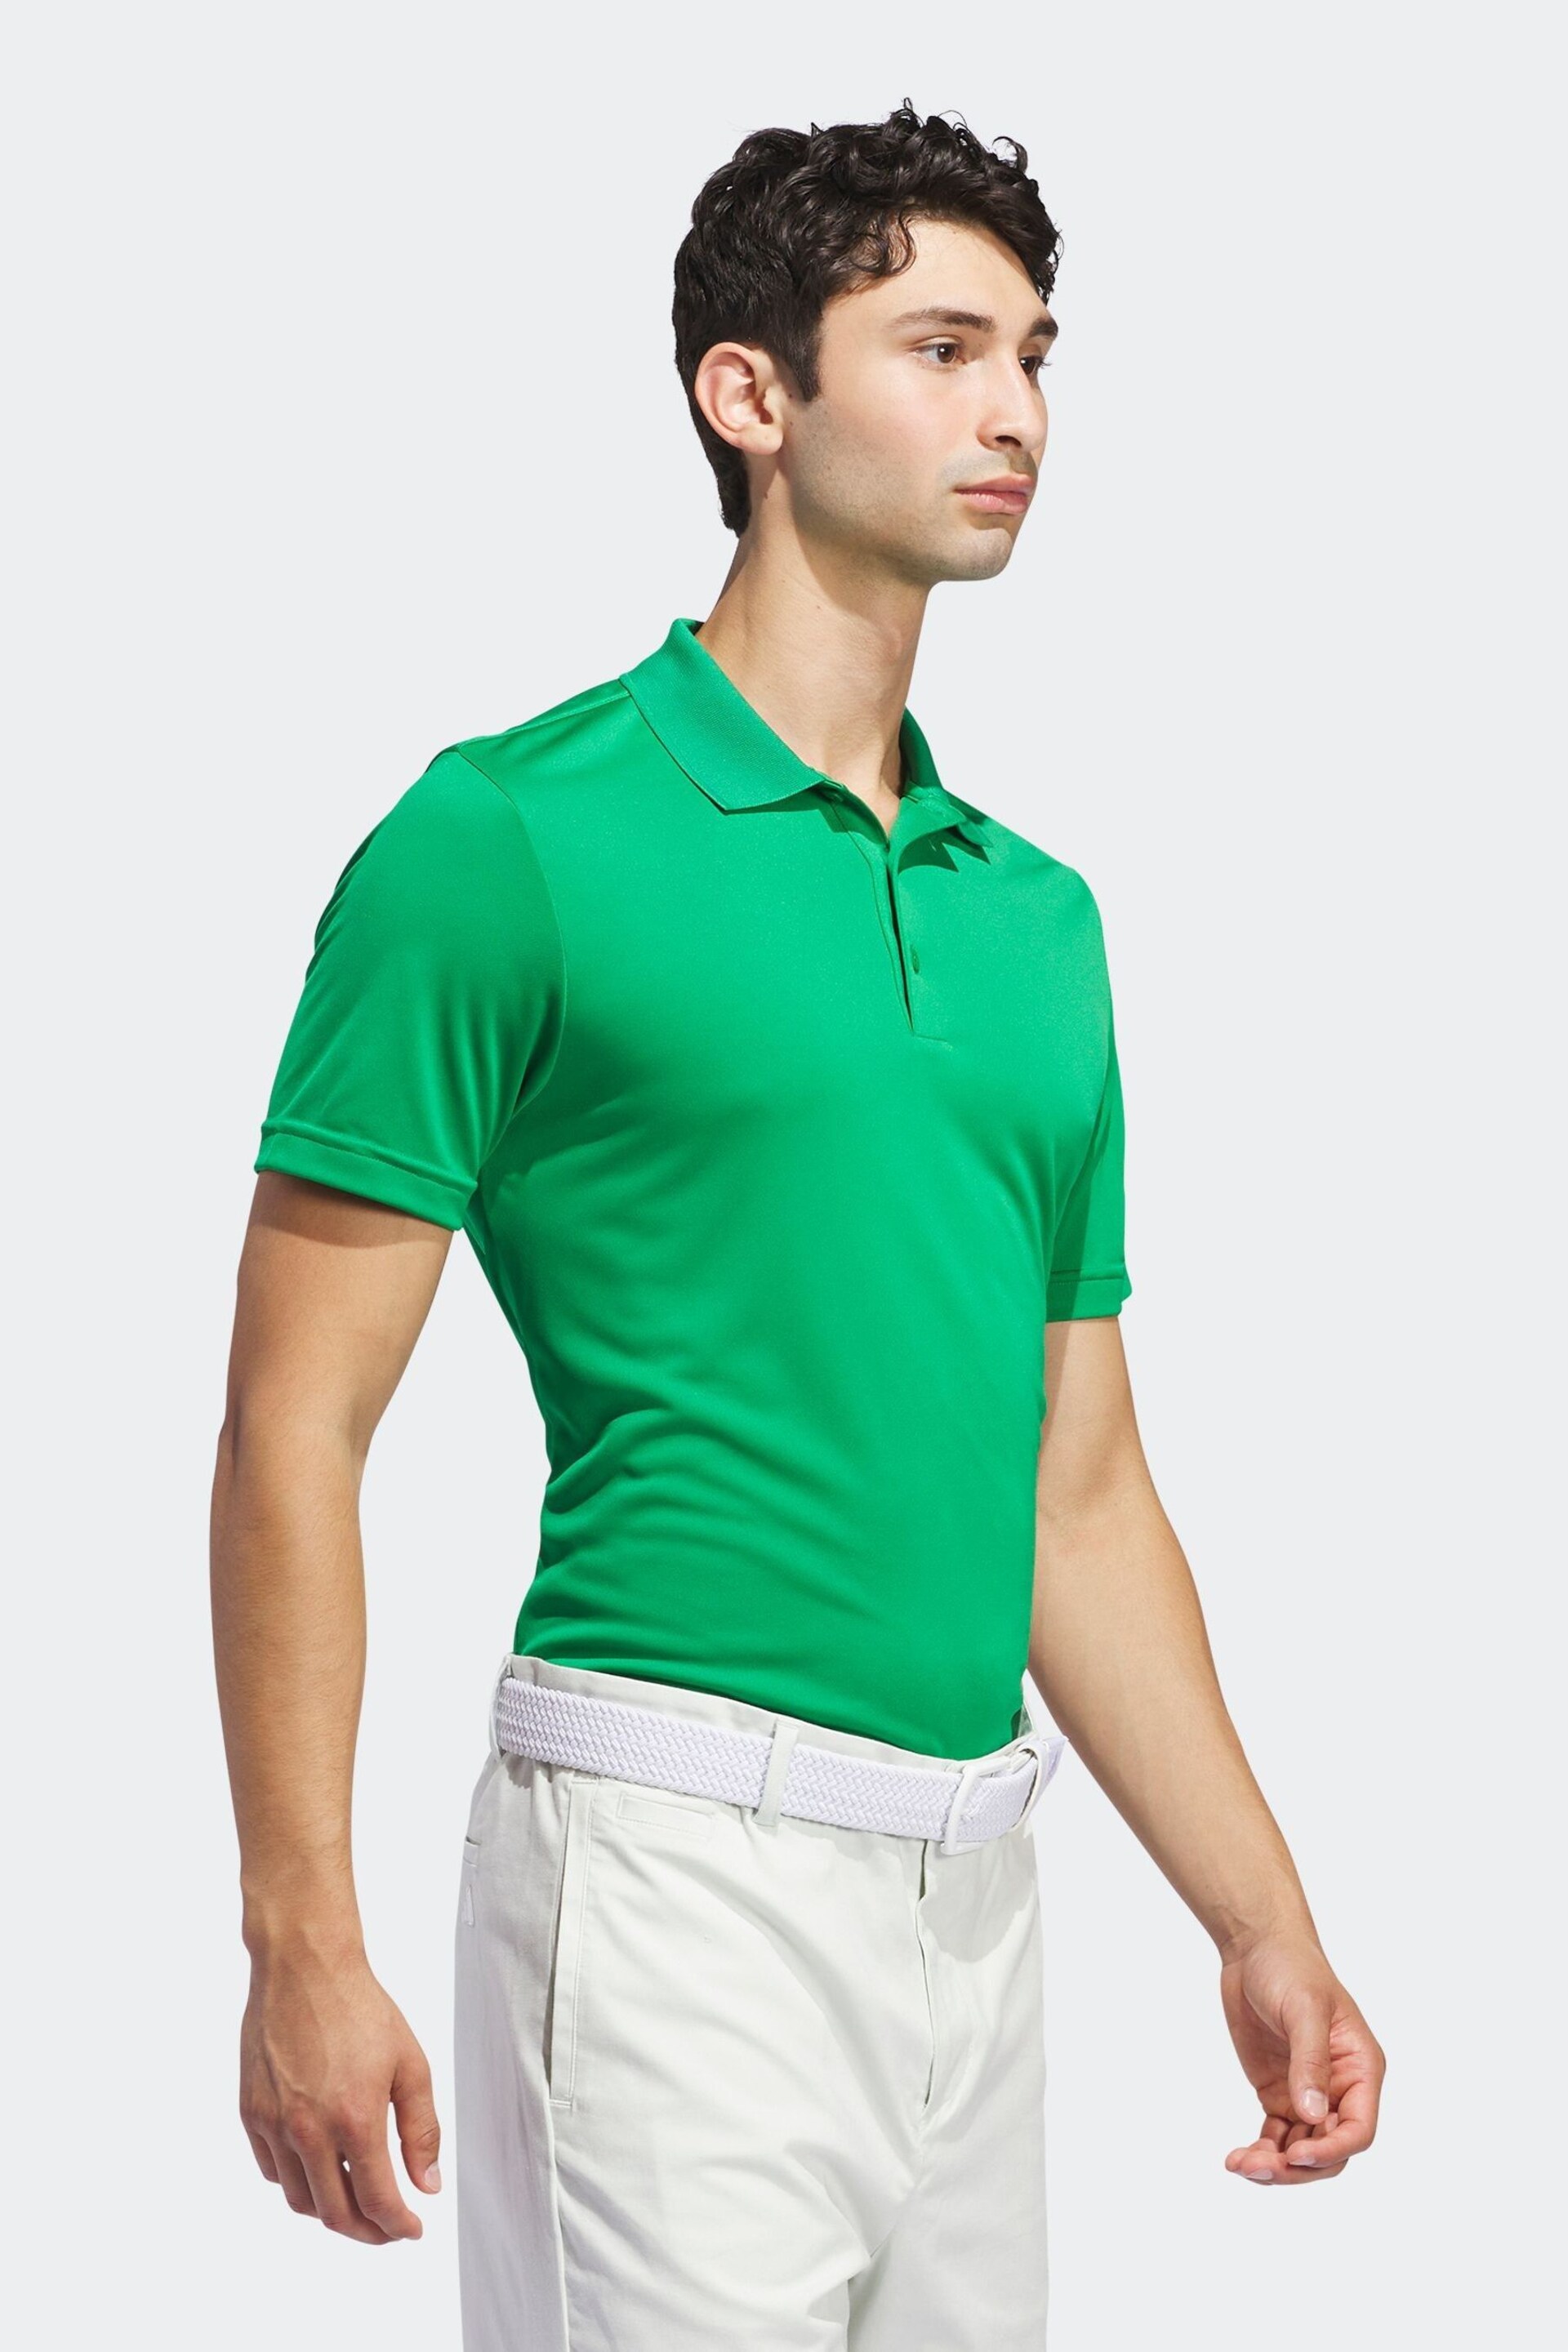 adidas Golf Polo Shirt - Image 4 of 7